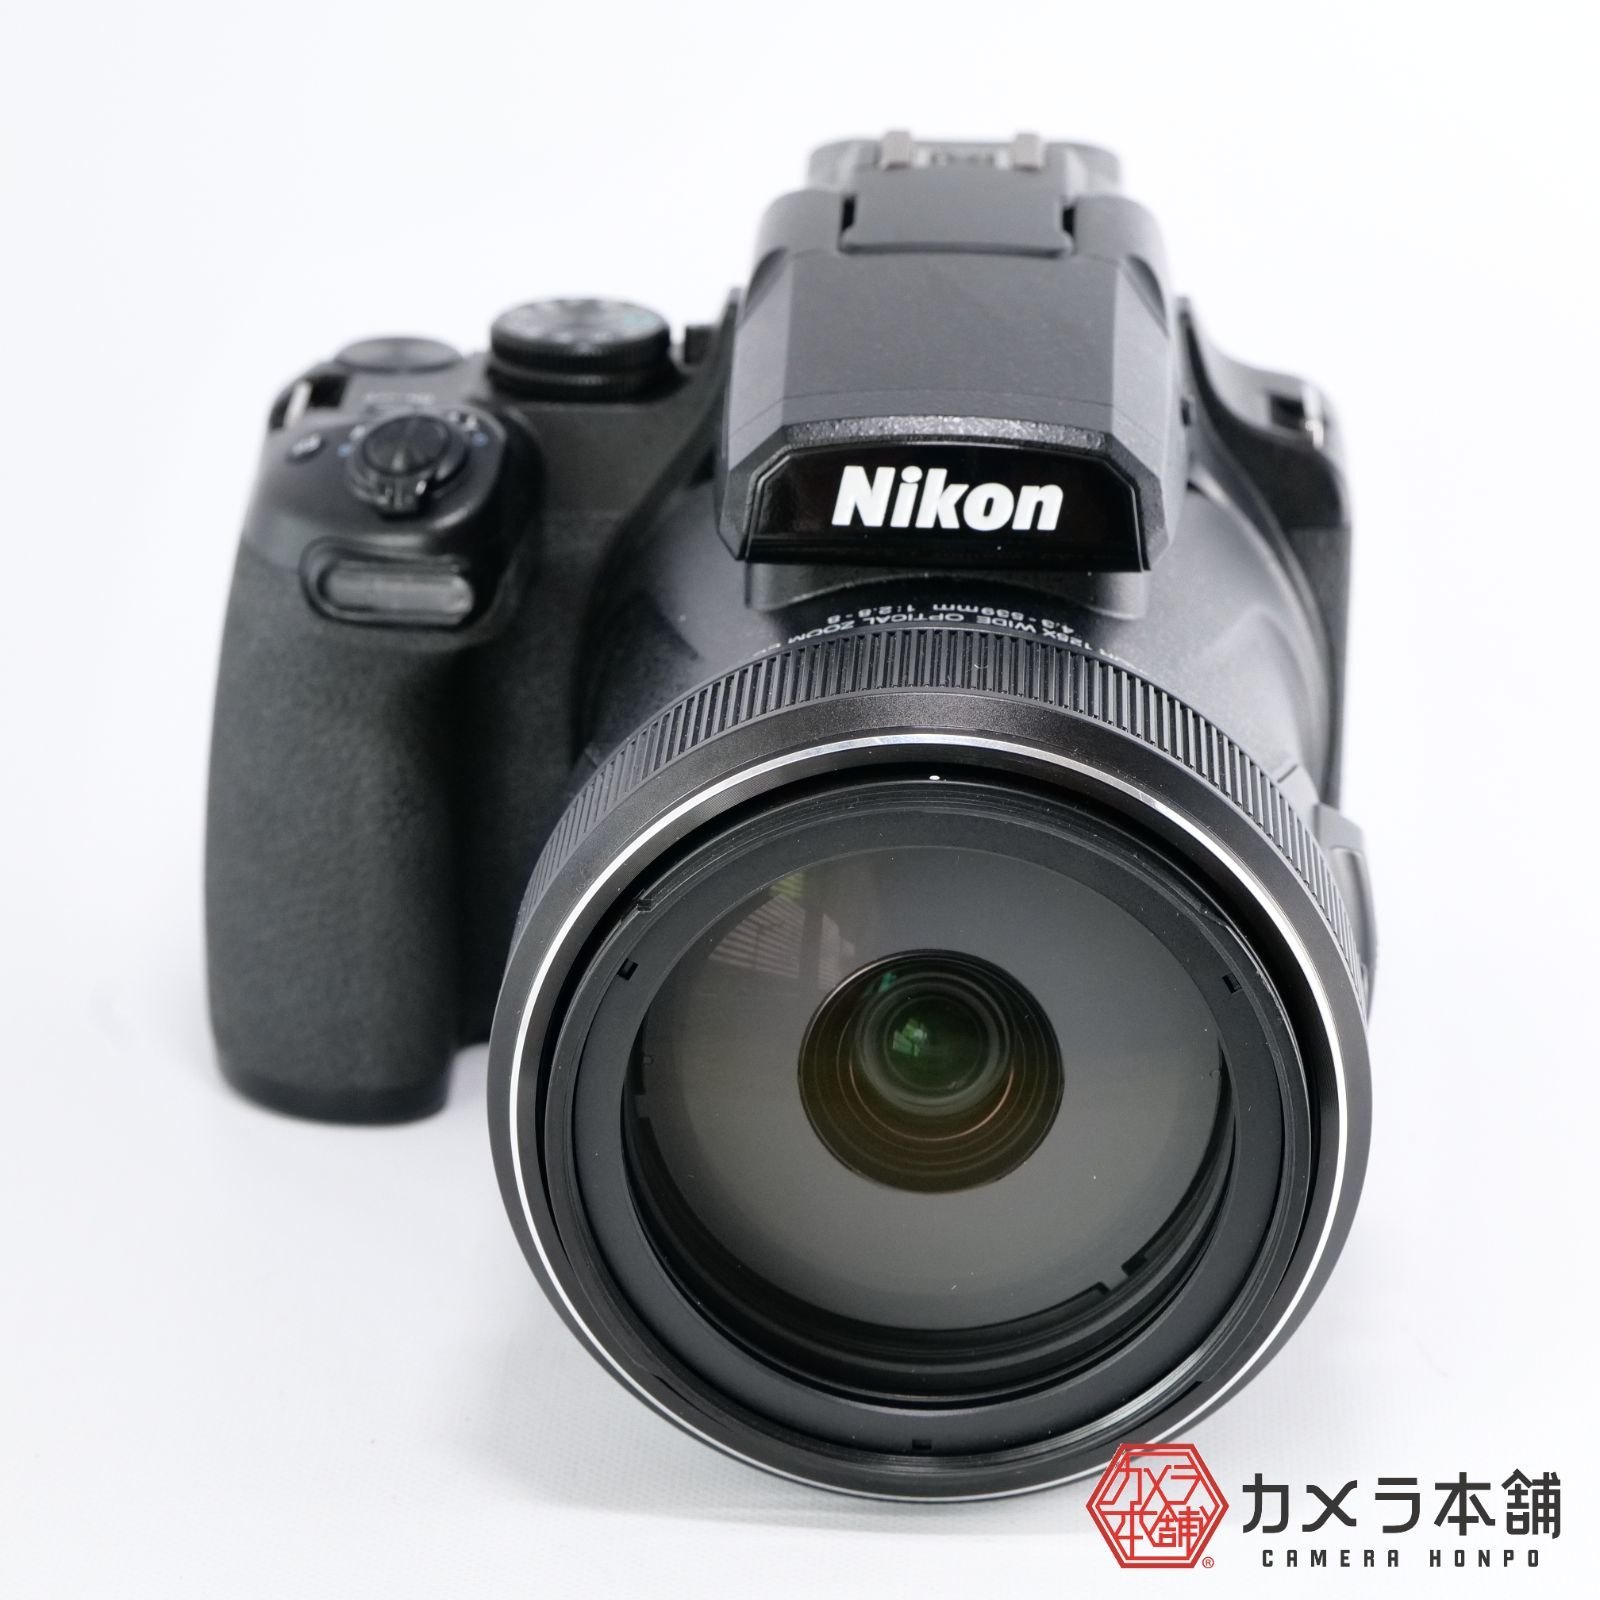 Nikon ニコン COOLPIX P1000 クールピクス P1000BK - カメラ本舗